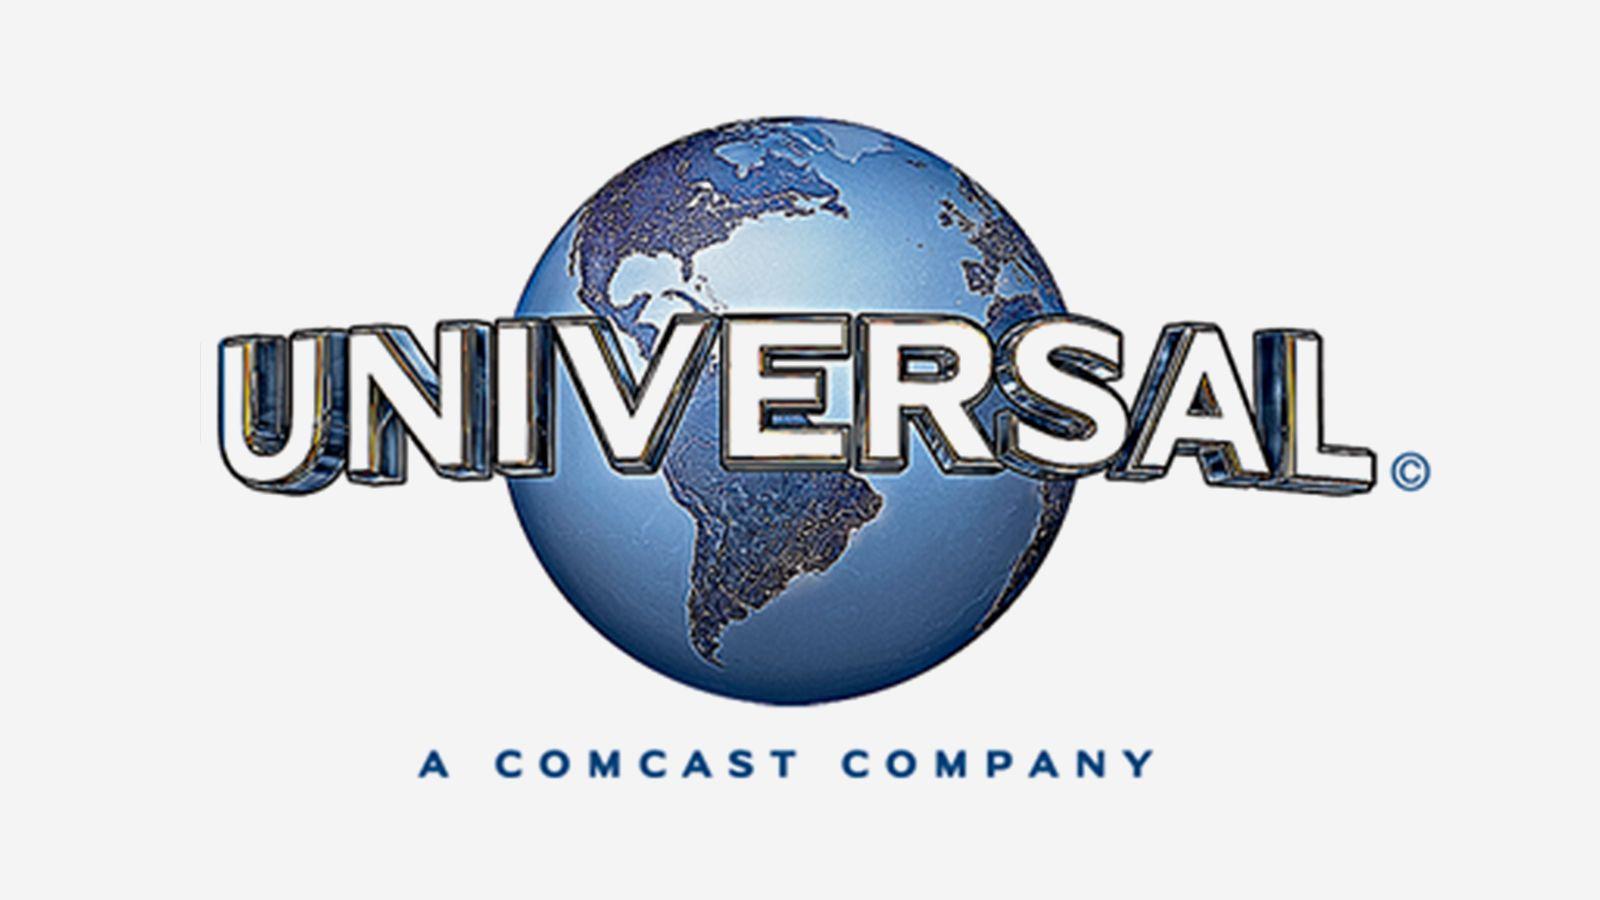 Universal a Comcast Company Logo - More Logos